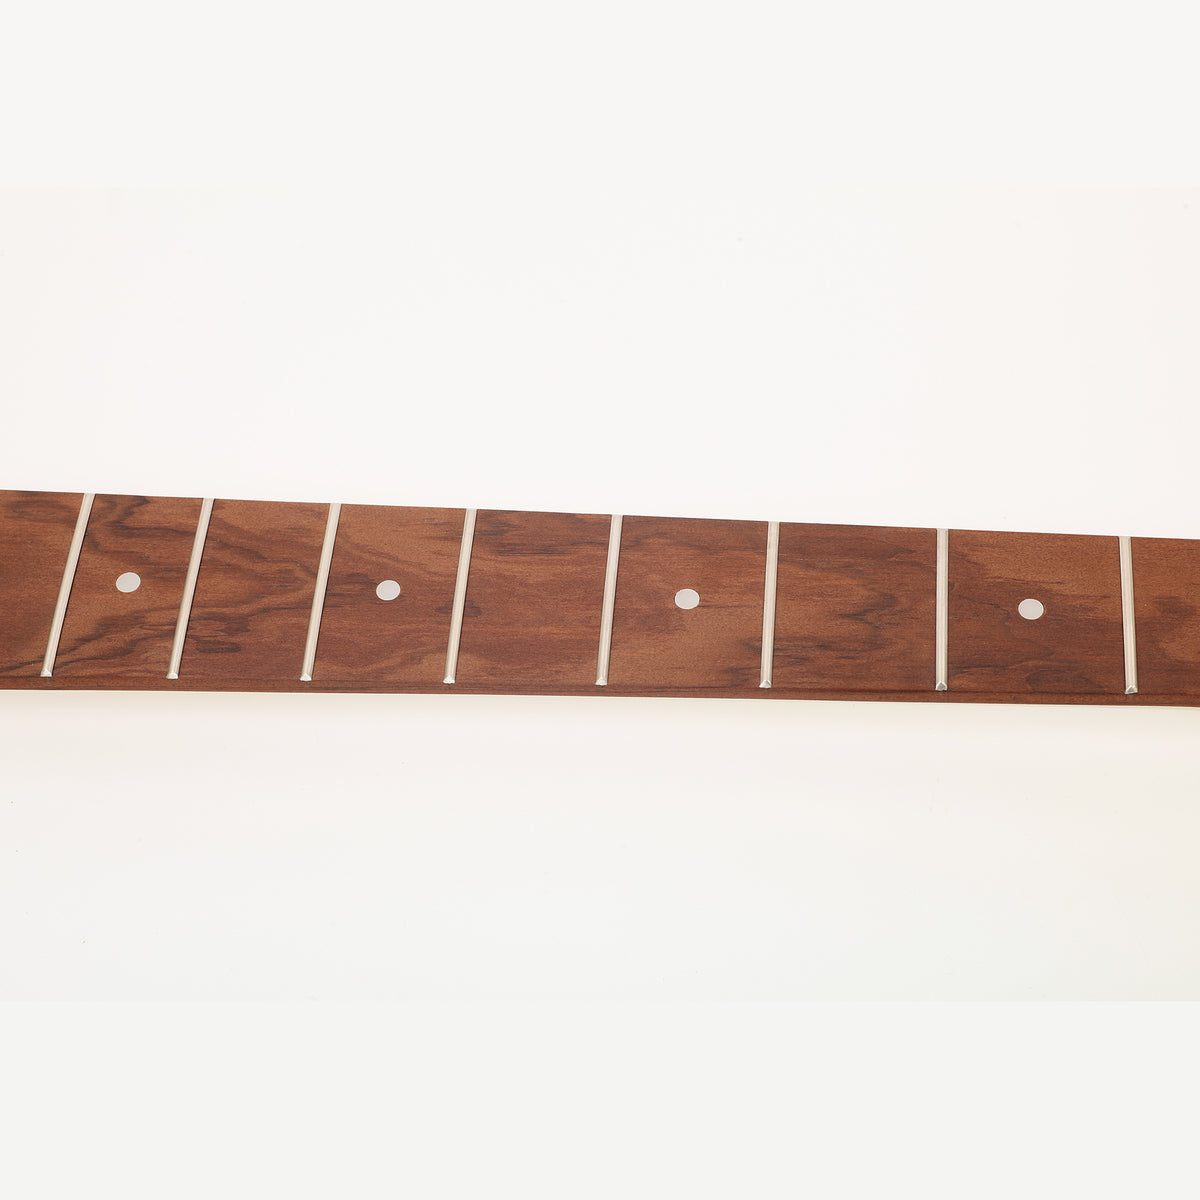 5-String DIY Bass Guitar Fretboard